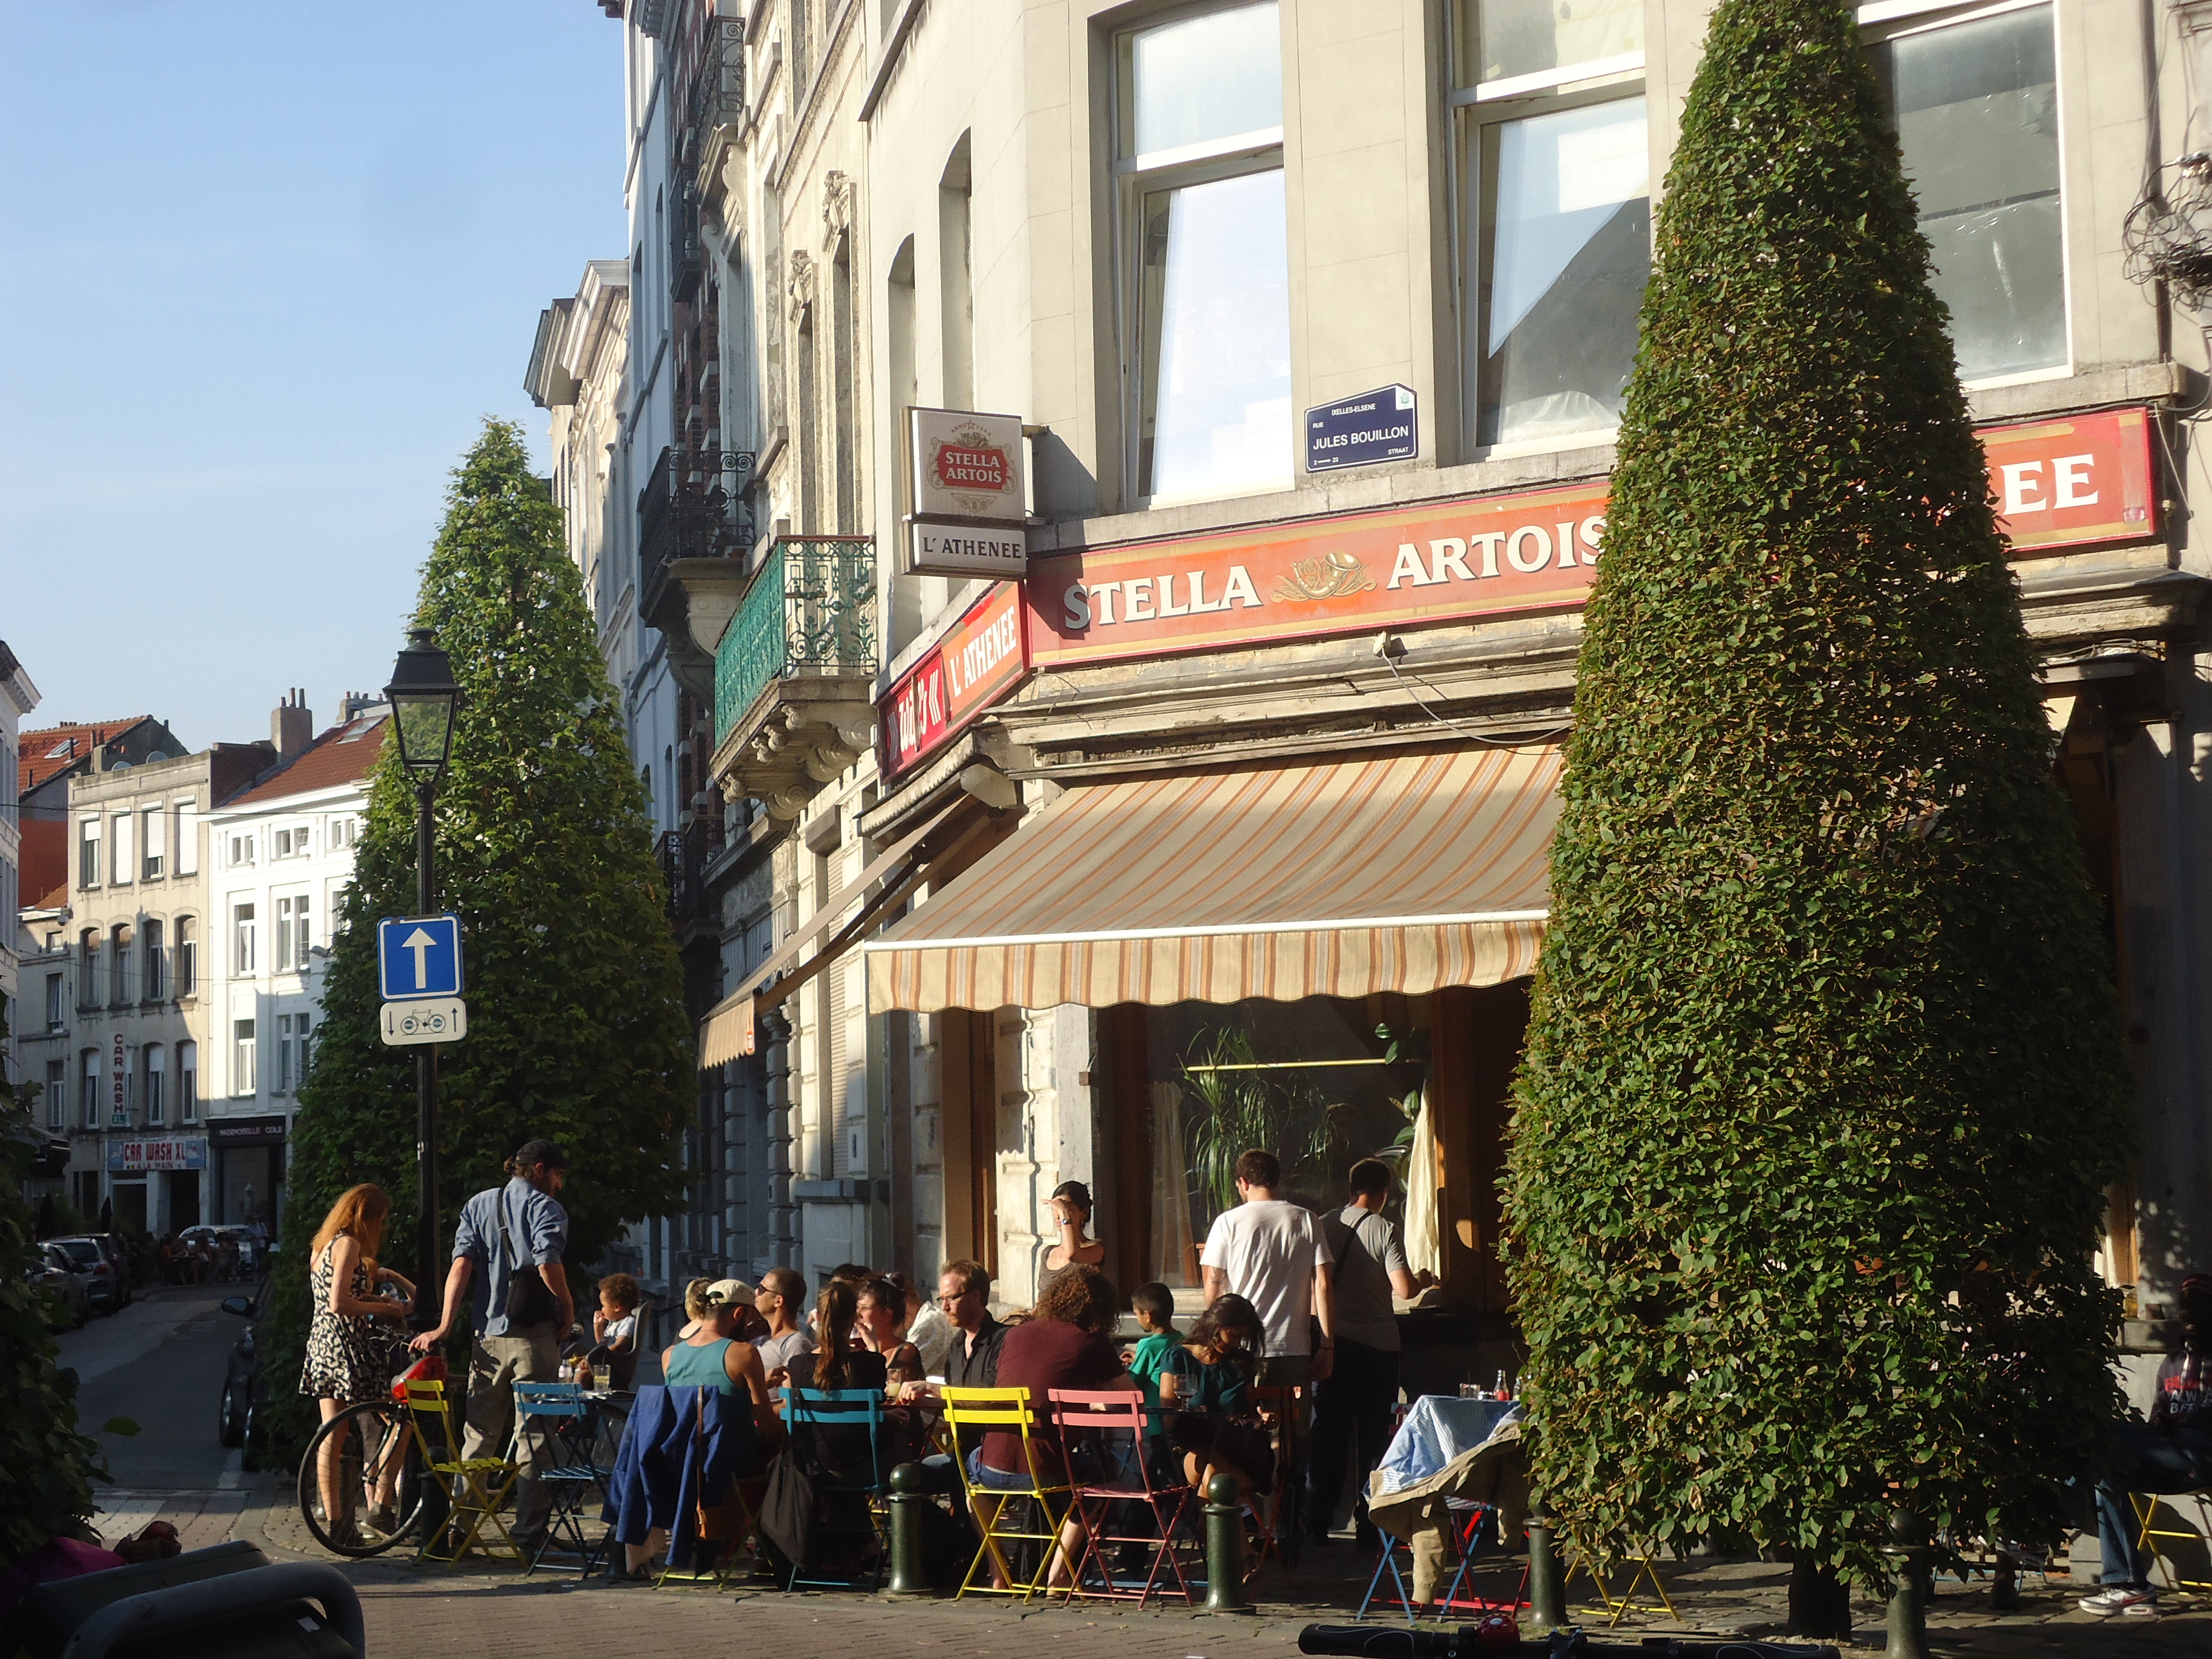 Why Ixelles Is My Favorite Brussels Neighborhood